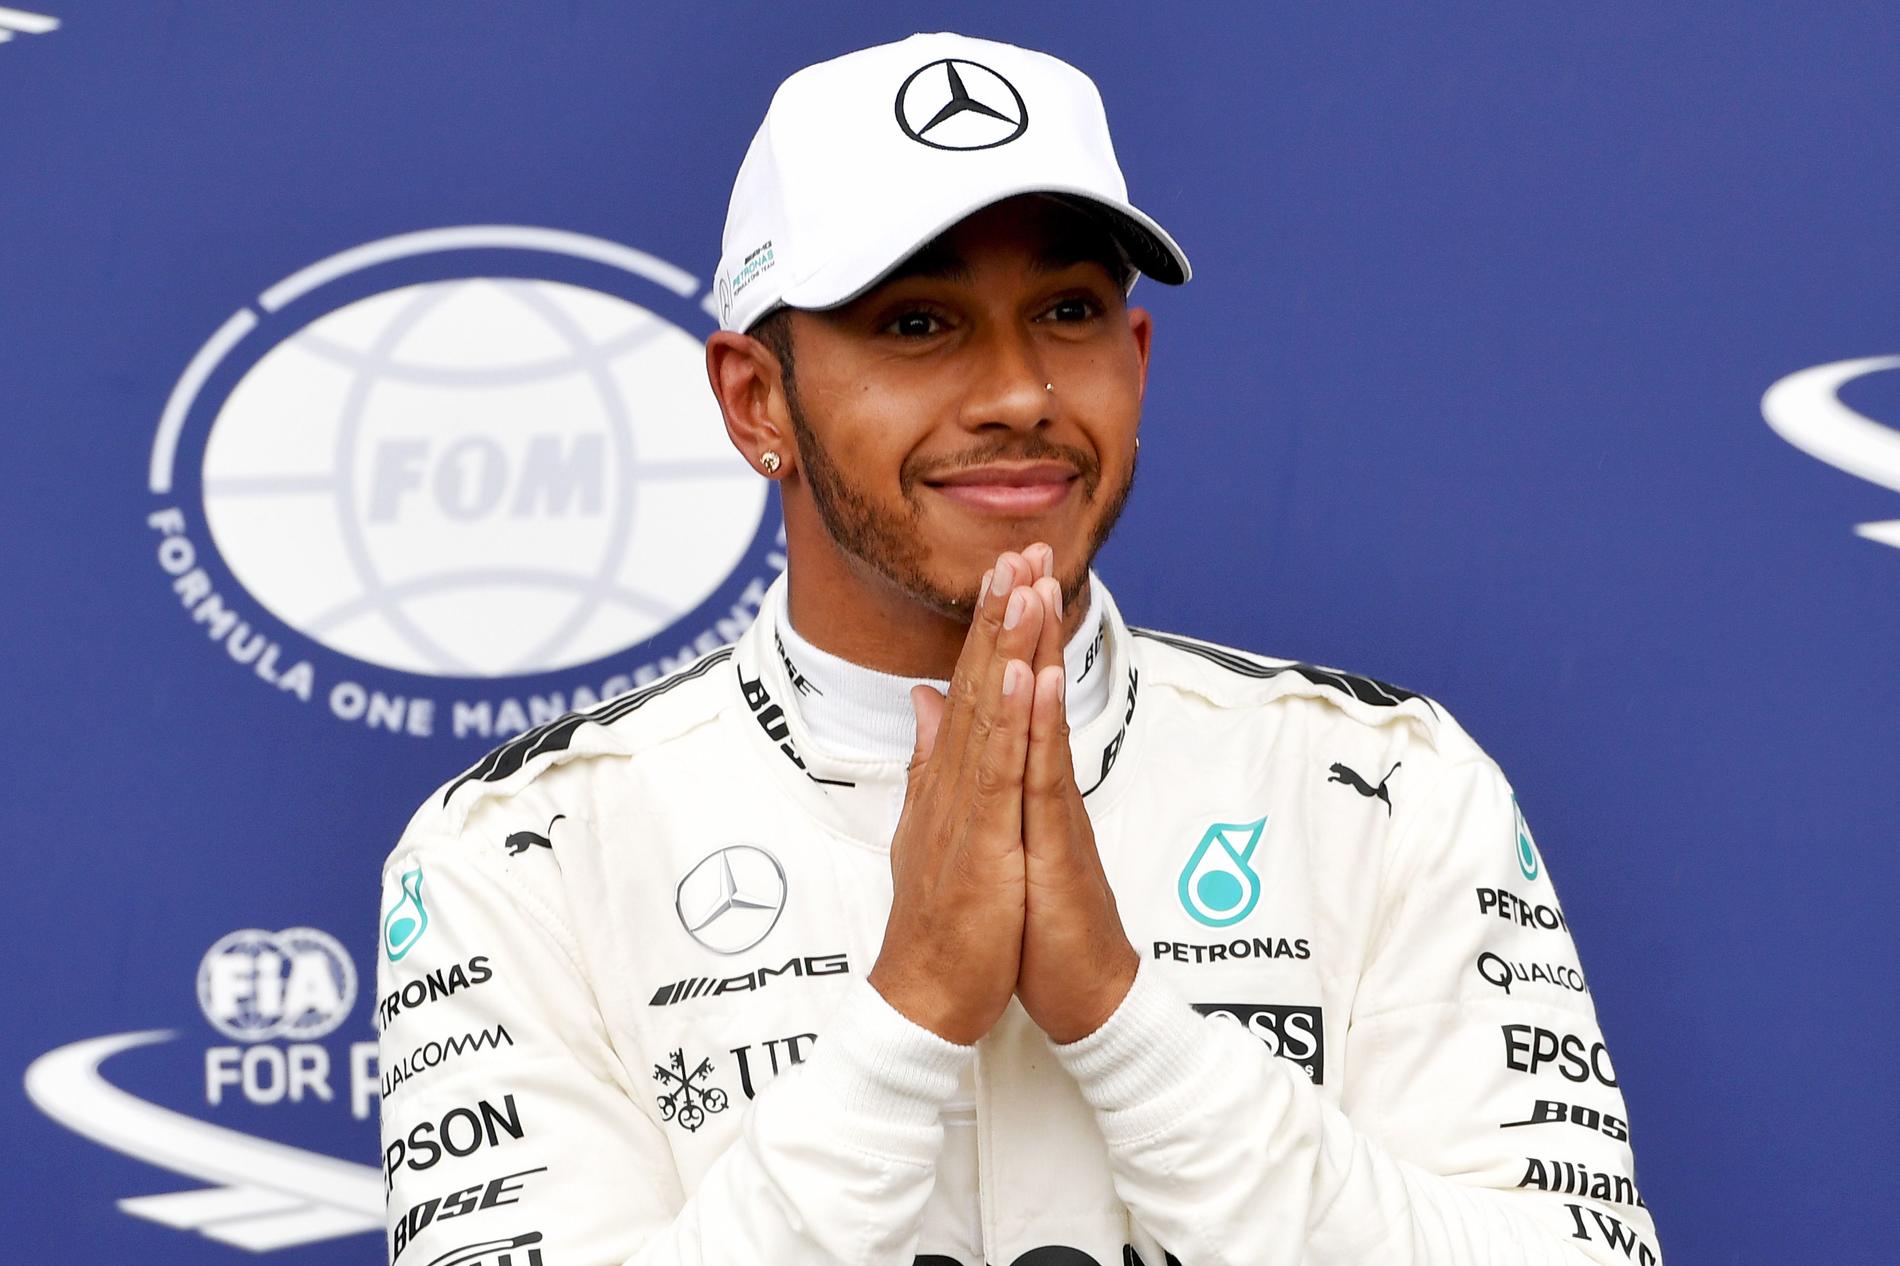 F1: Lewis Hamilton vinner på Monza - tar över VM-ledningen